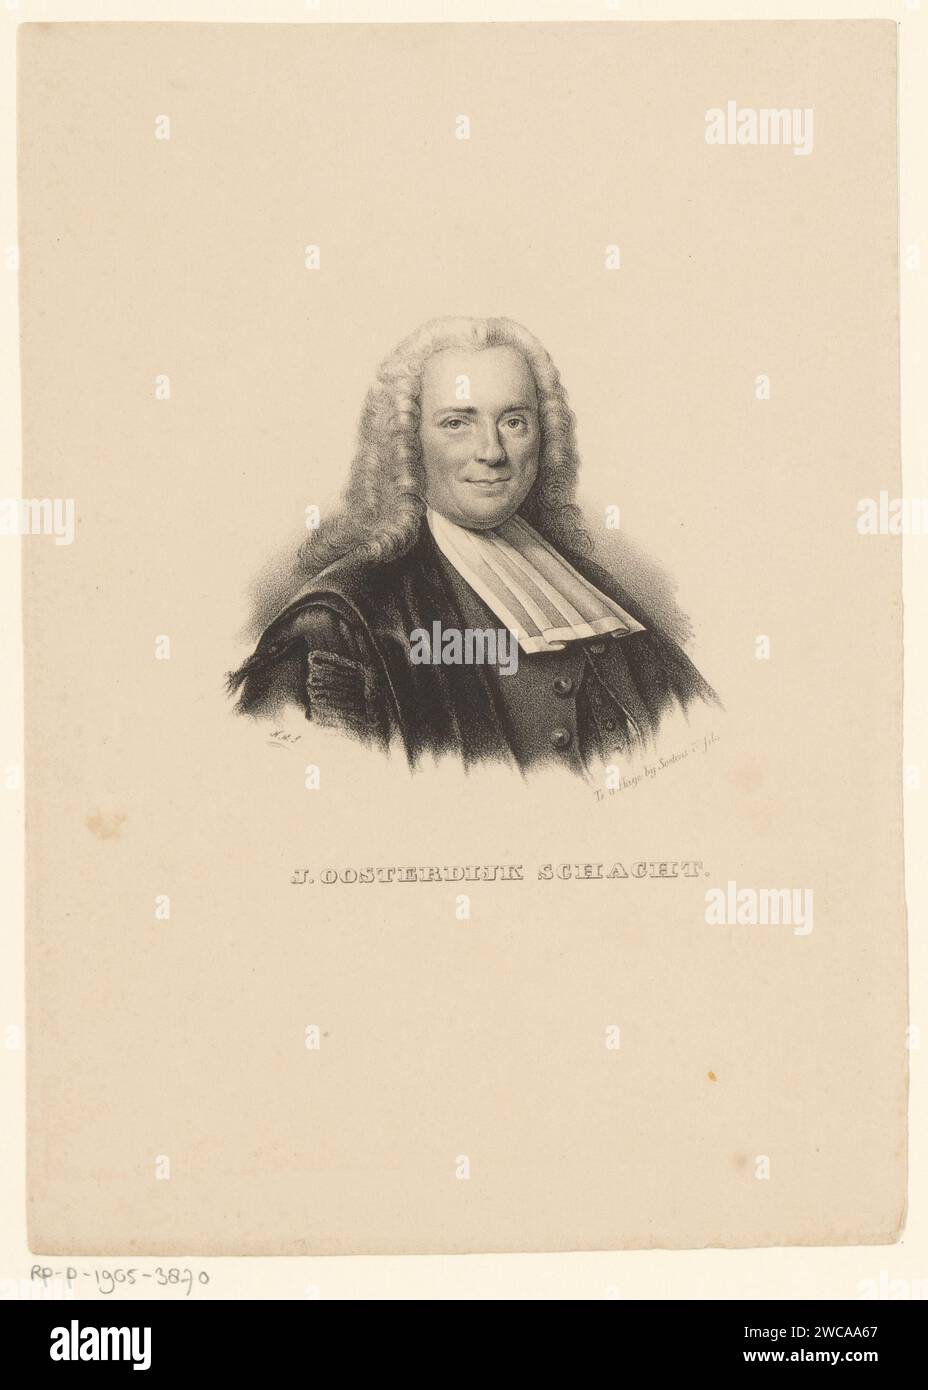 Porträt von Johannes Oosterdijk Schaacht, Nicolaas Martinus Schild, um 1837 - um 1840 Druck das Haager Papier historische Personen (+ (Vollporträt) Stockfoto